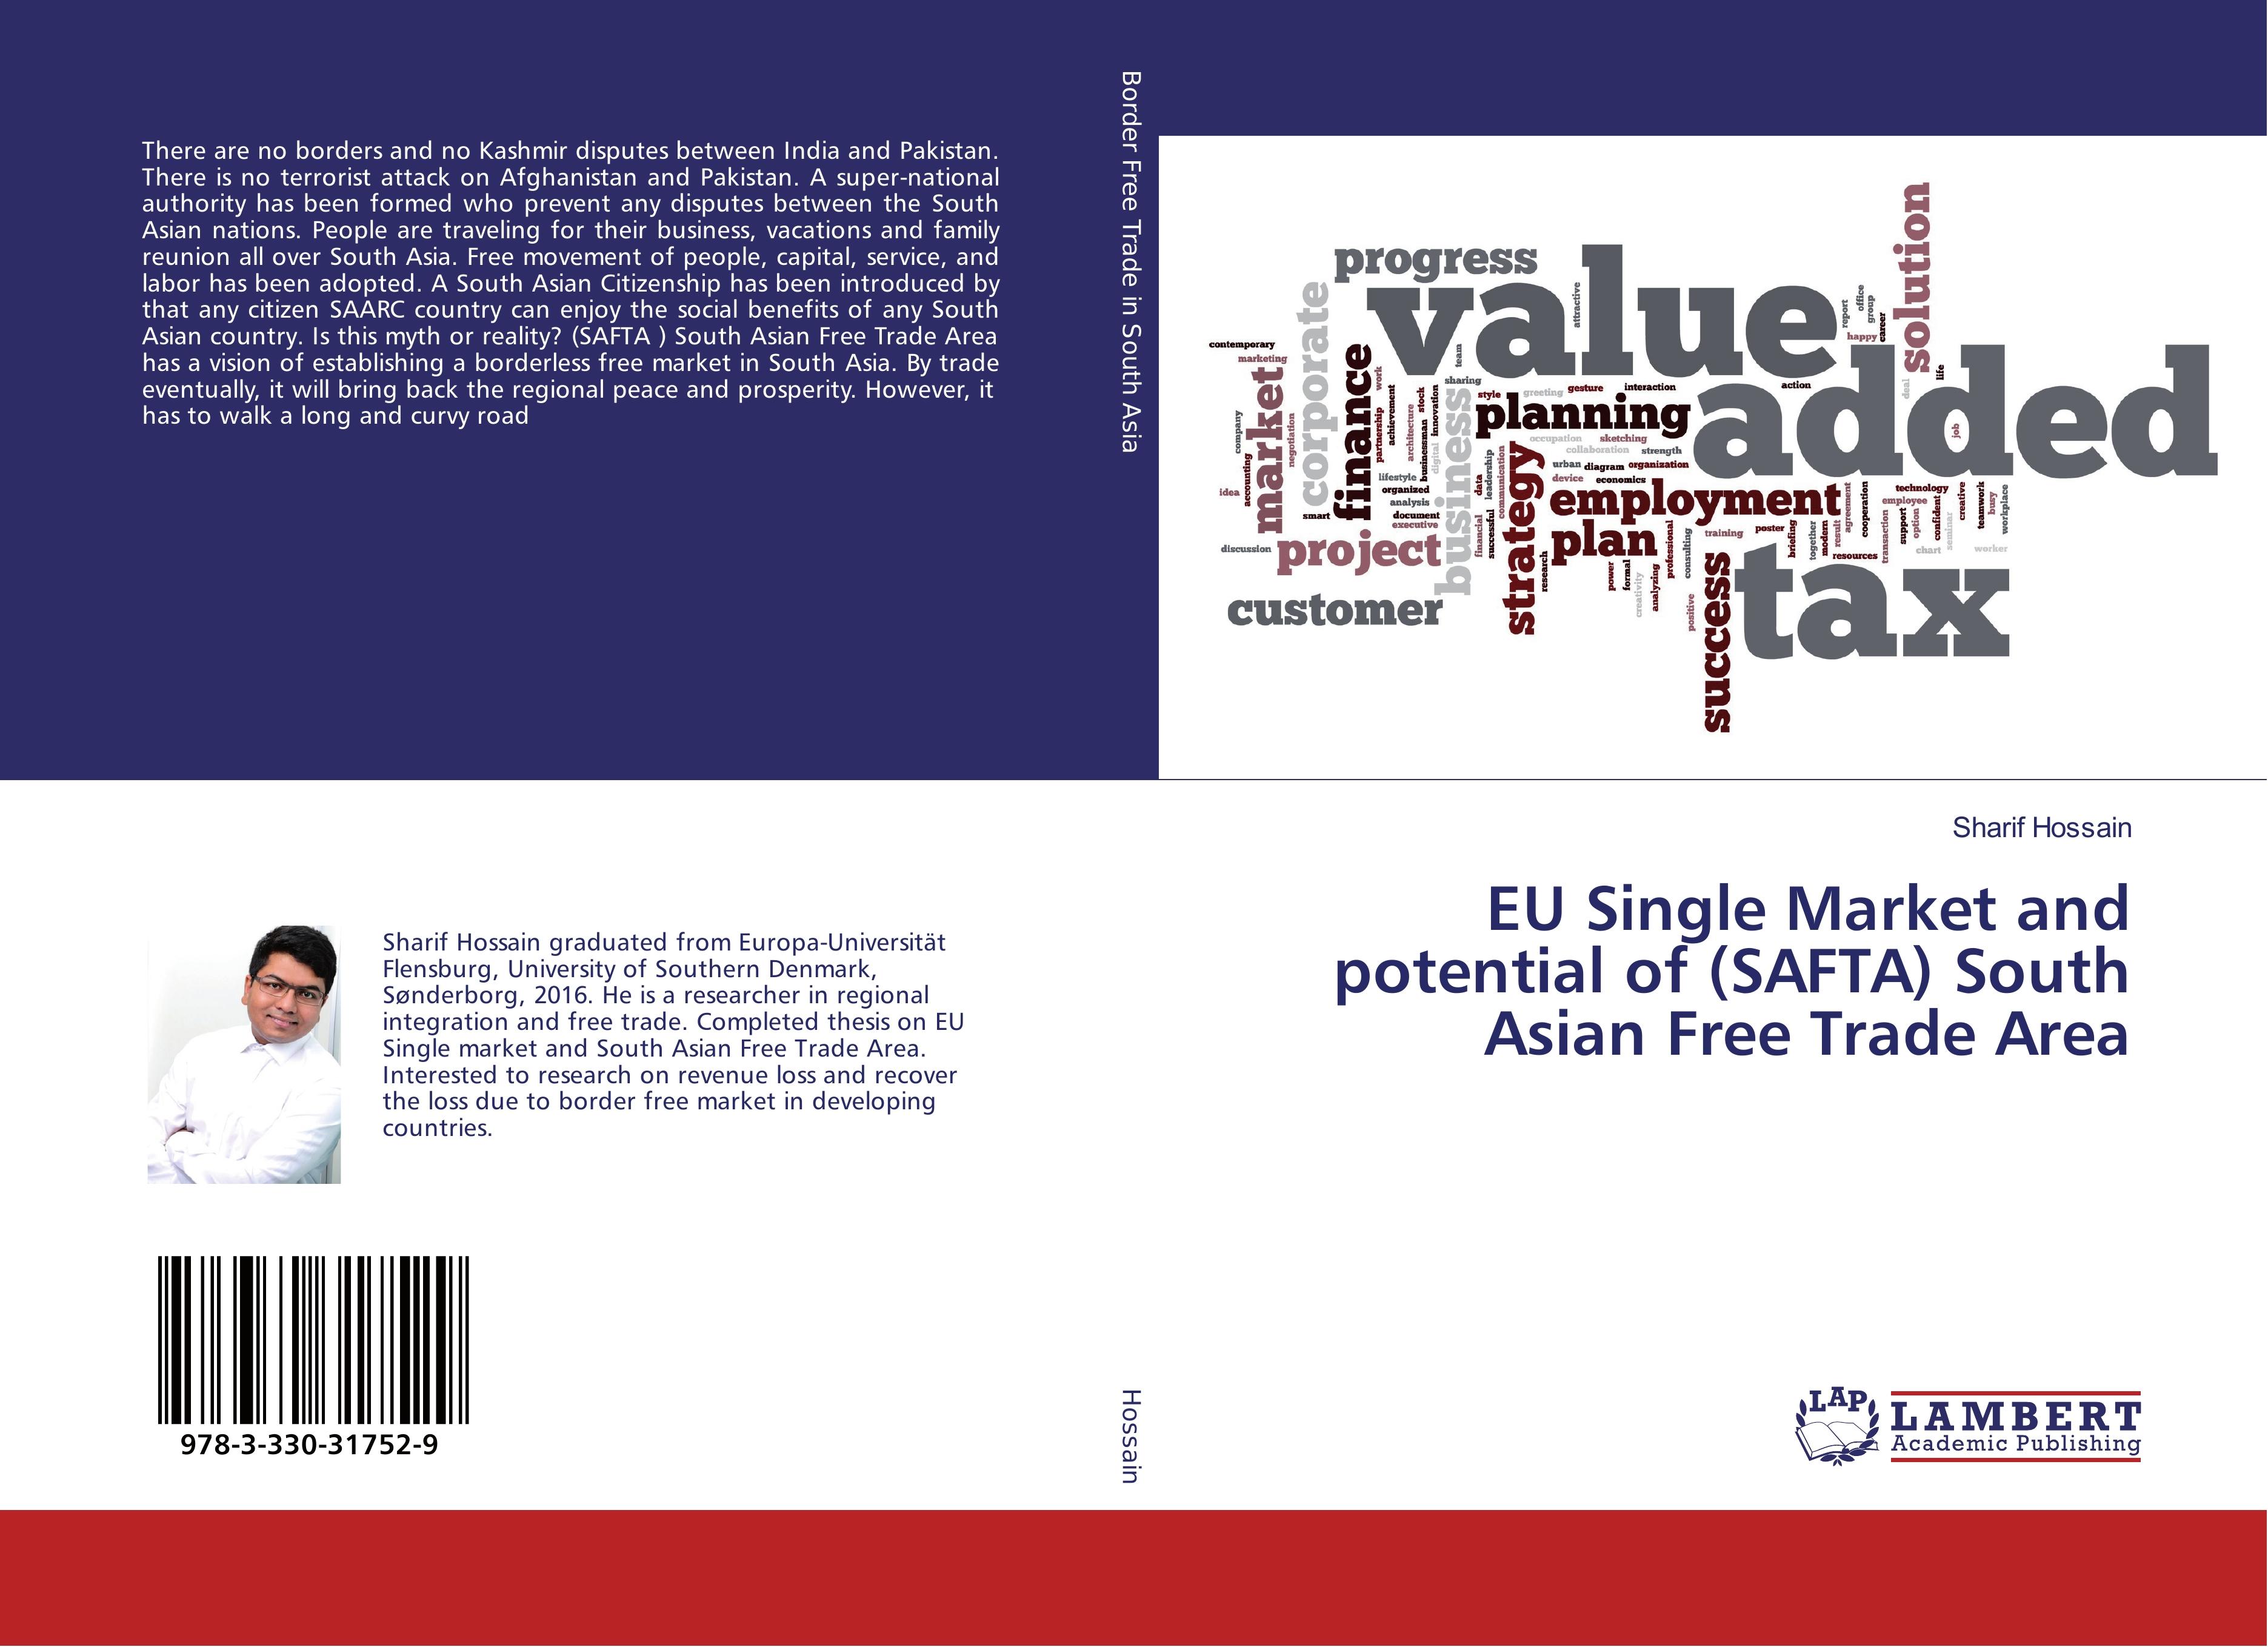 EU Single Market and potential of (SAFTA) South Asian Free Trade Area - Sharif Hossain